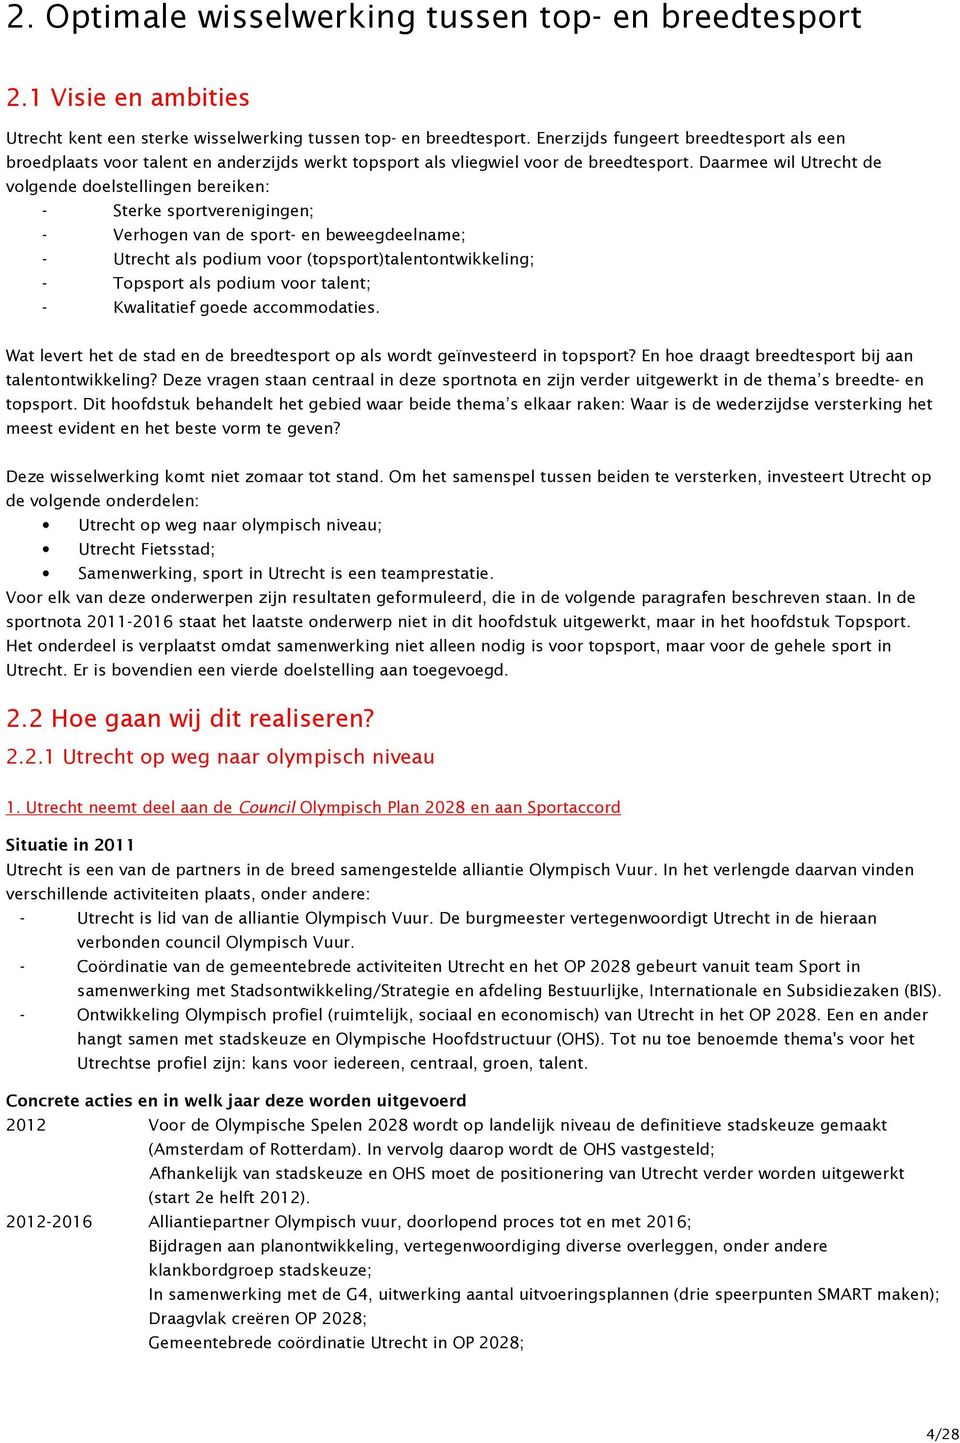 Daarmee wil Utrecht de volgende doelstellingen bereiken: - Sterke sportverenigingen; - Verhogen van de sport- en beweegdeelname; - Utrecht als podium voor (topsport)talentontwikkeling; - Topsport als